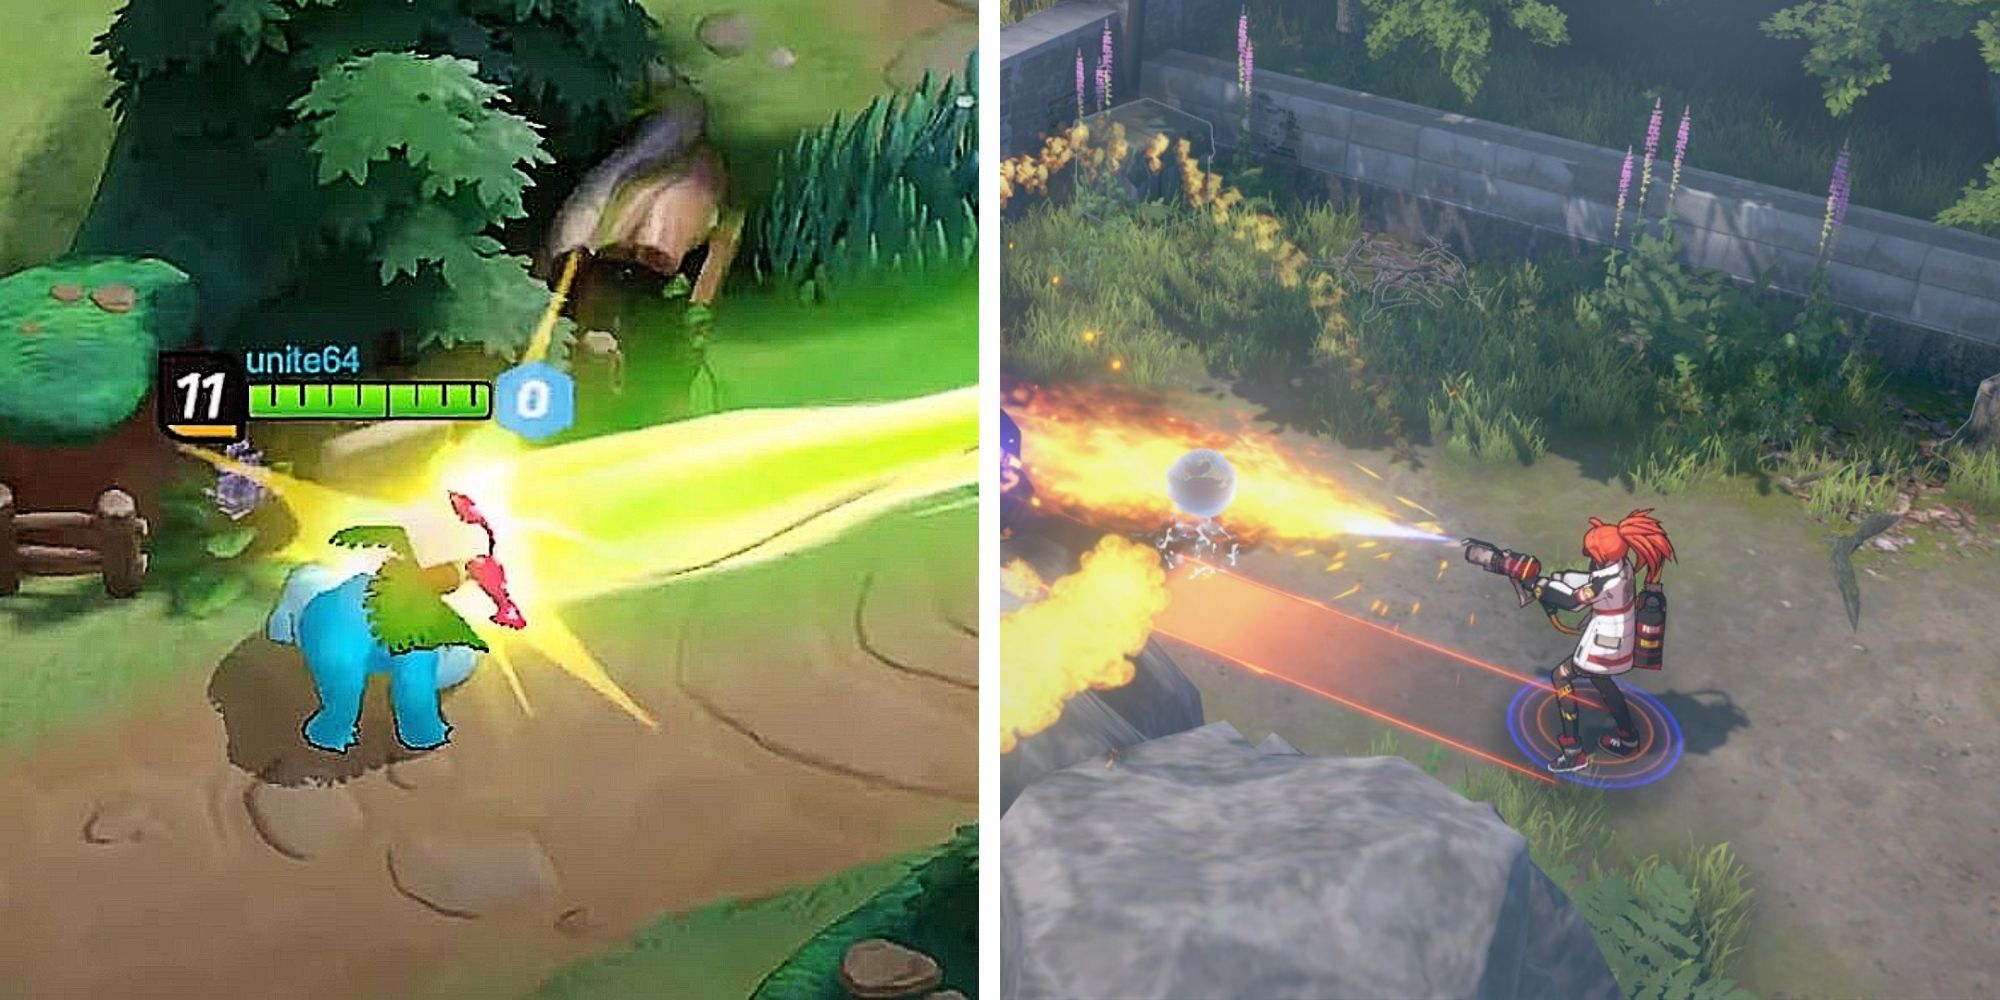 Split Image of Venasaur from Pokemon Unite and hero using flamethrower from Eternal Return